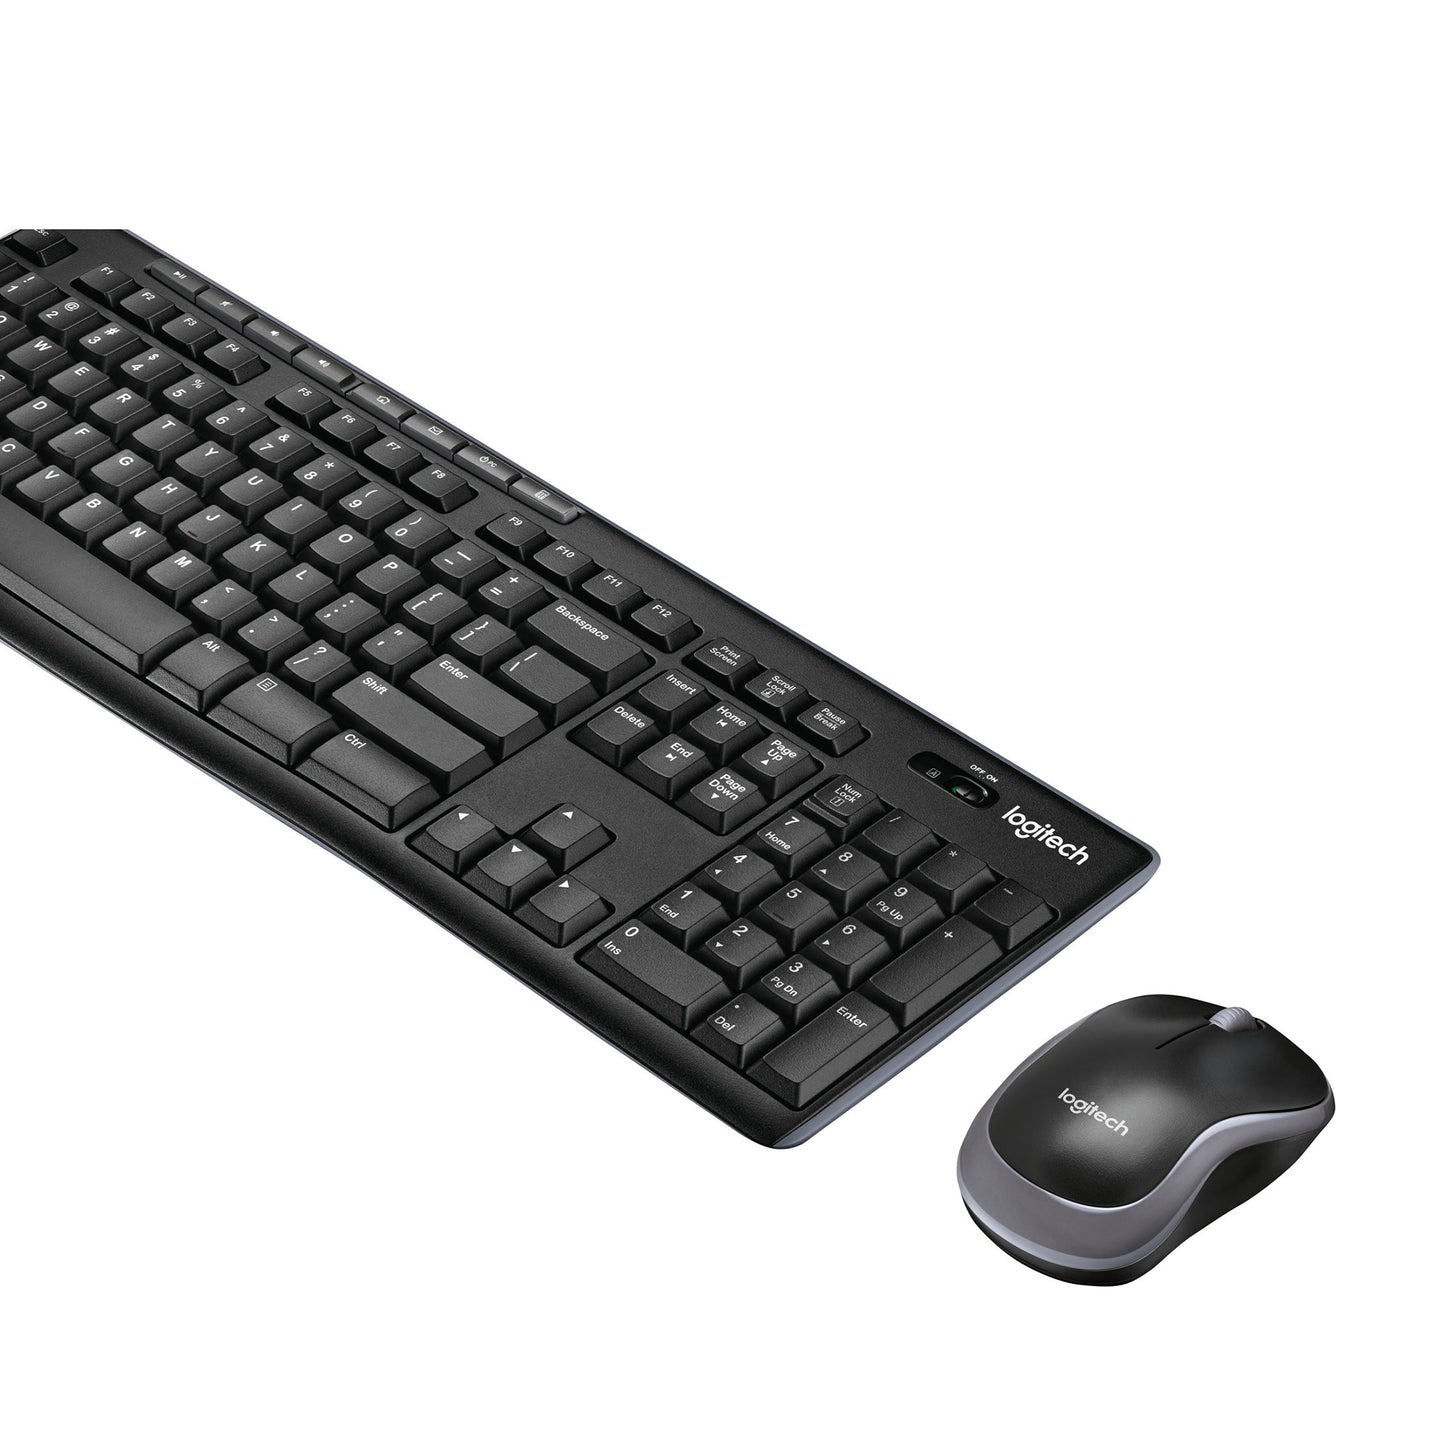 Bild einer kabellosen Logitech Tastatur mit kabelloser Maus - Seitenansicht